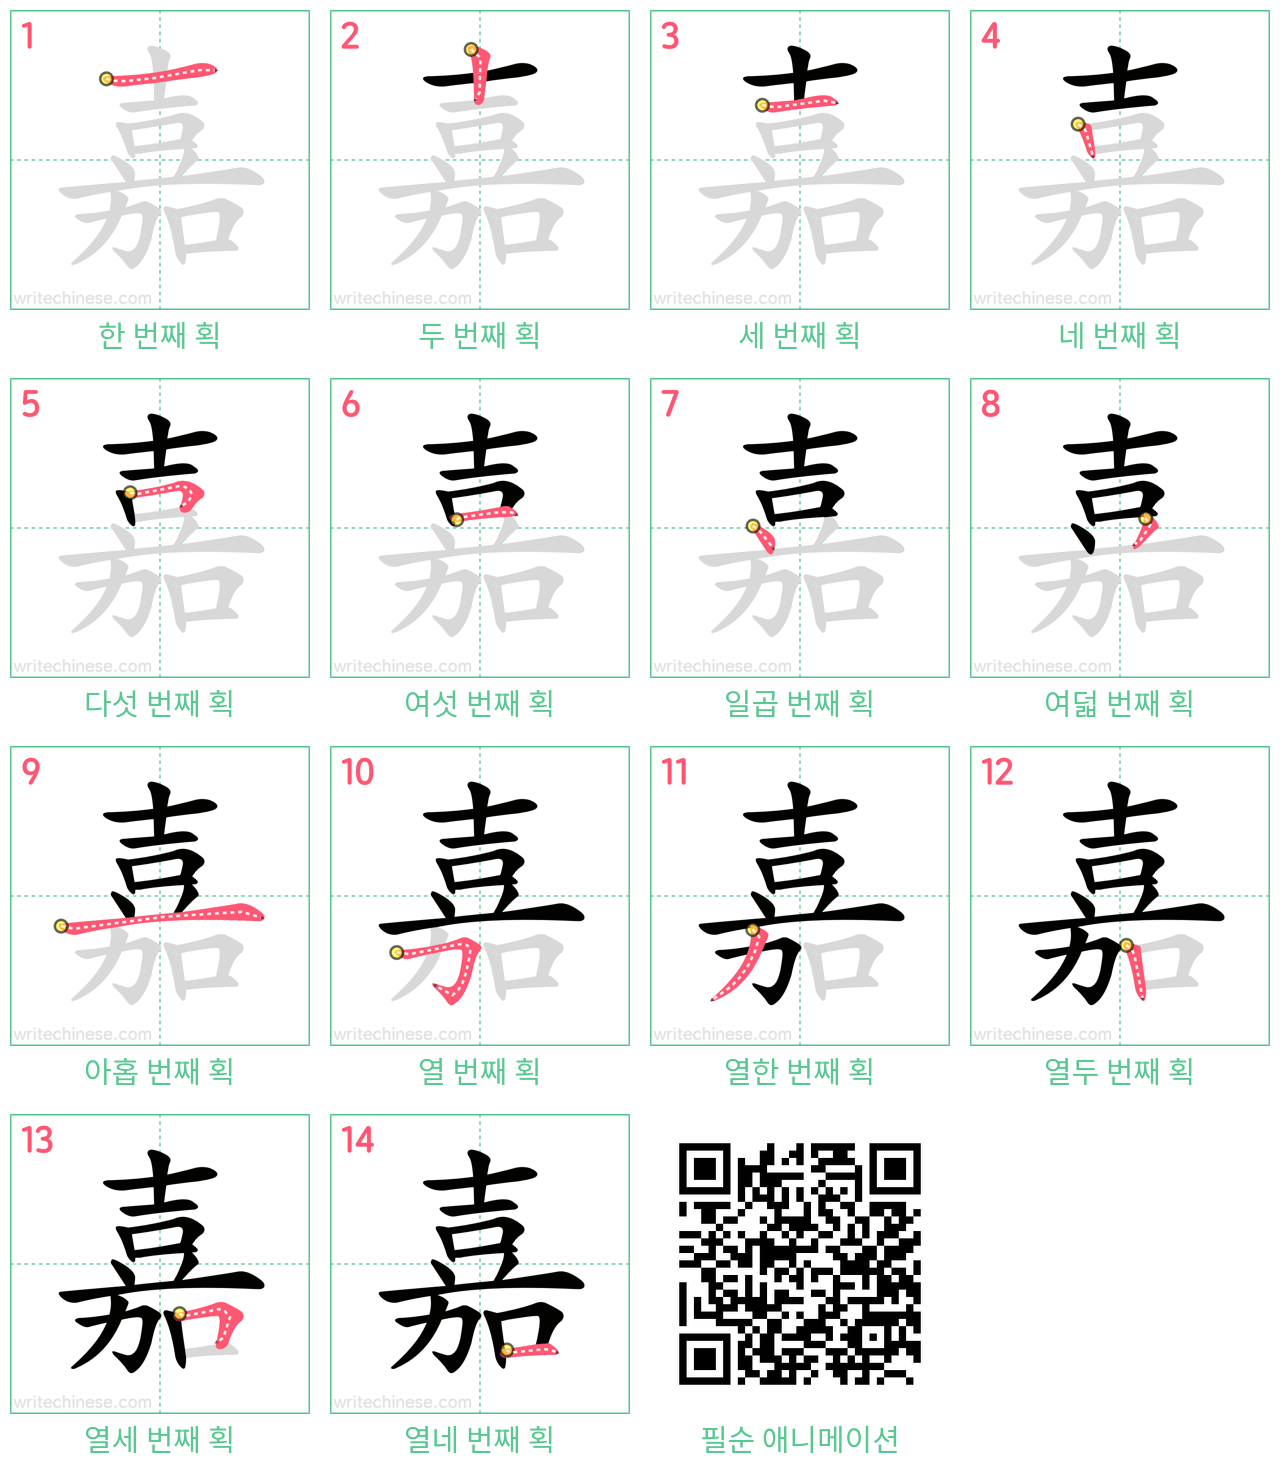 嘉 step-by-step stroke order diagrams